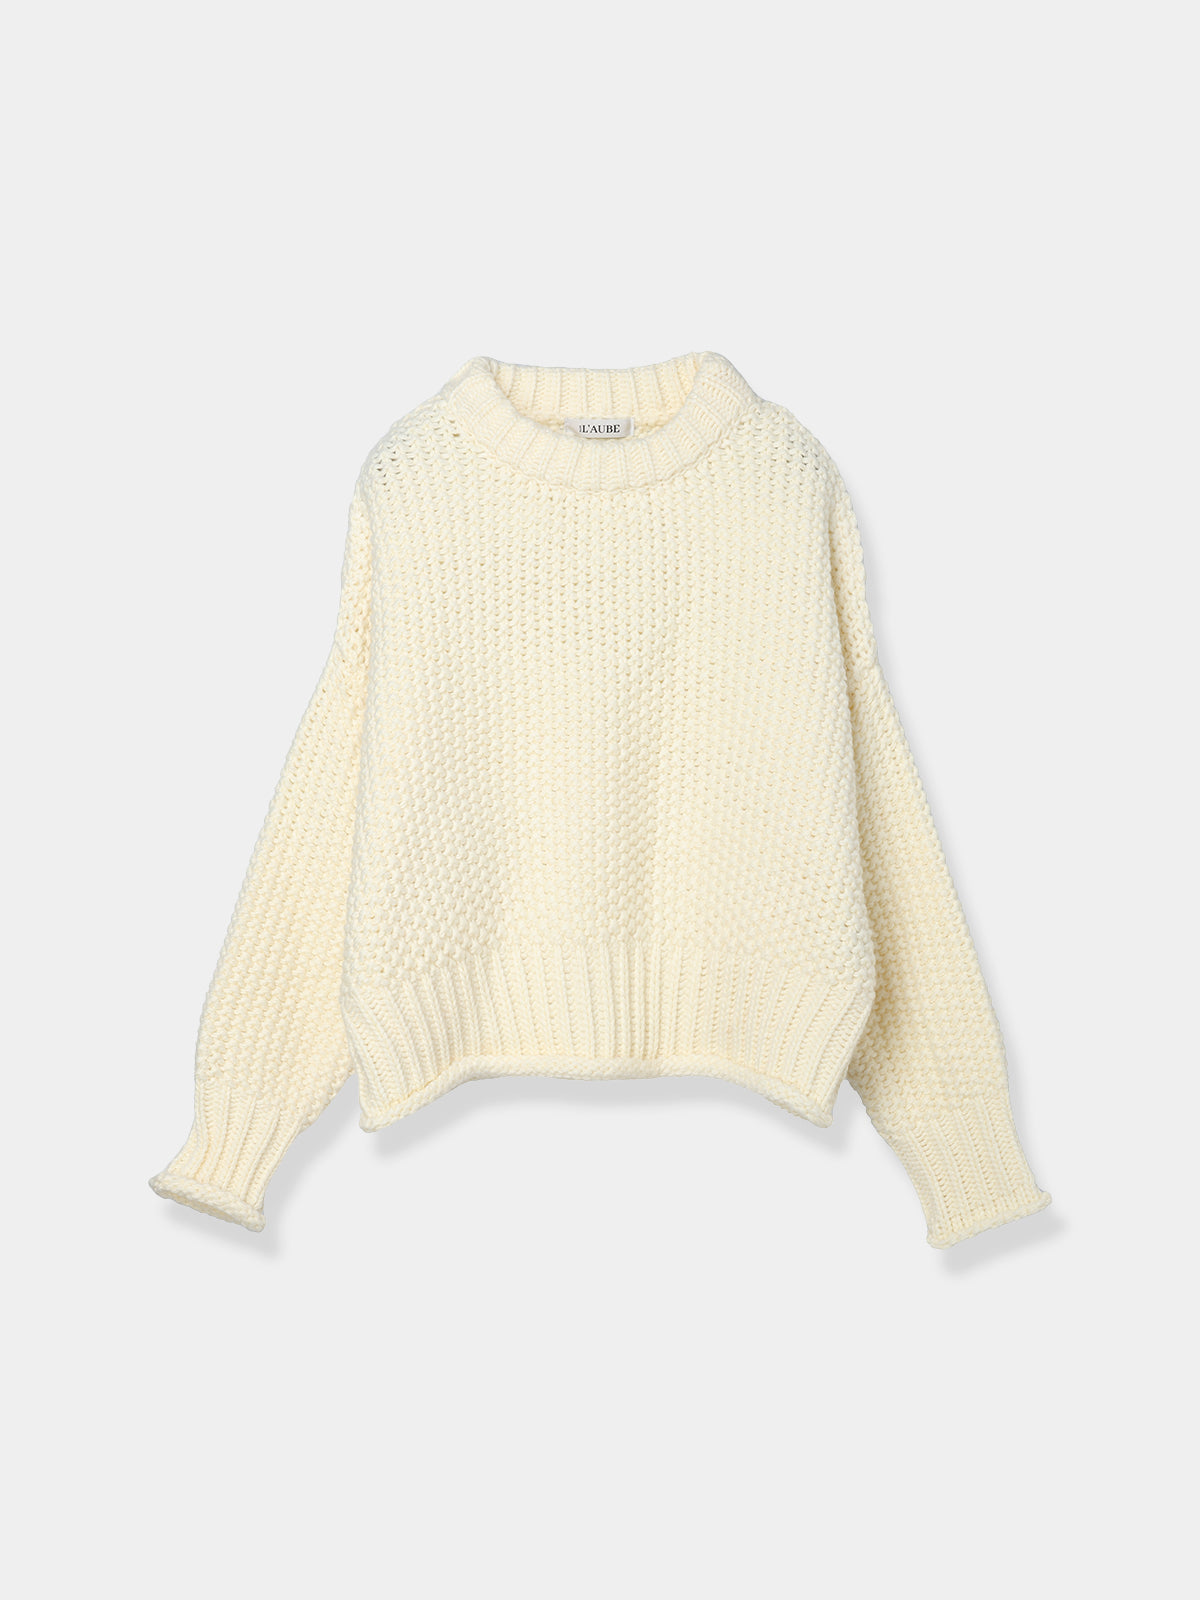 サイズL'AUBE BLANC  knit tops \u0026one-piece